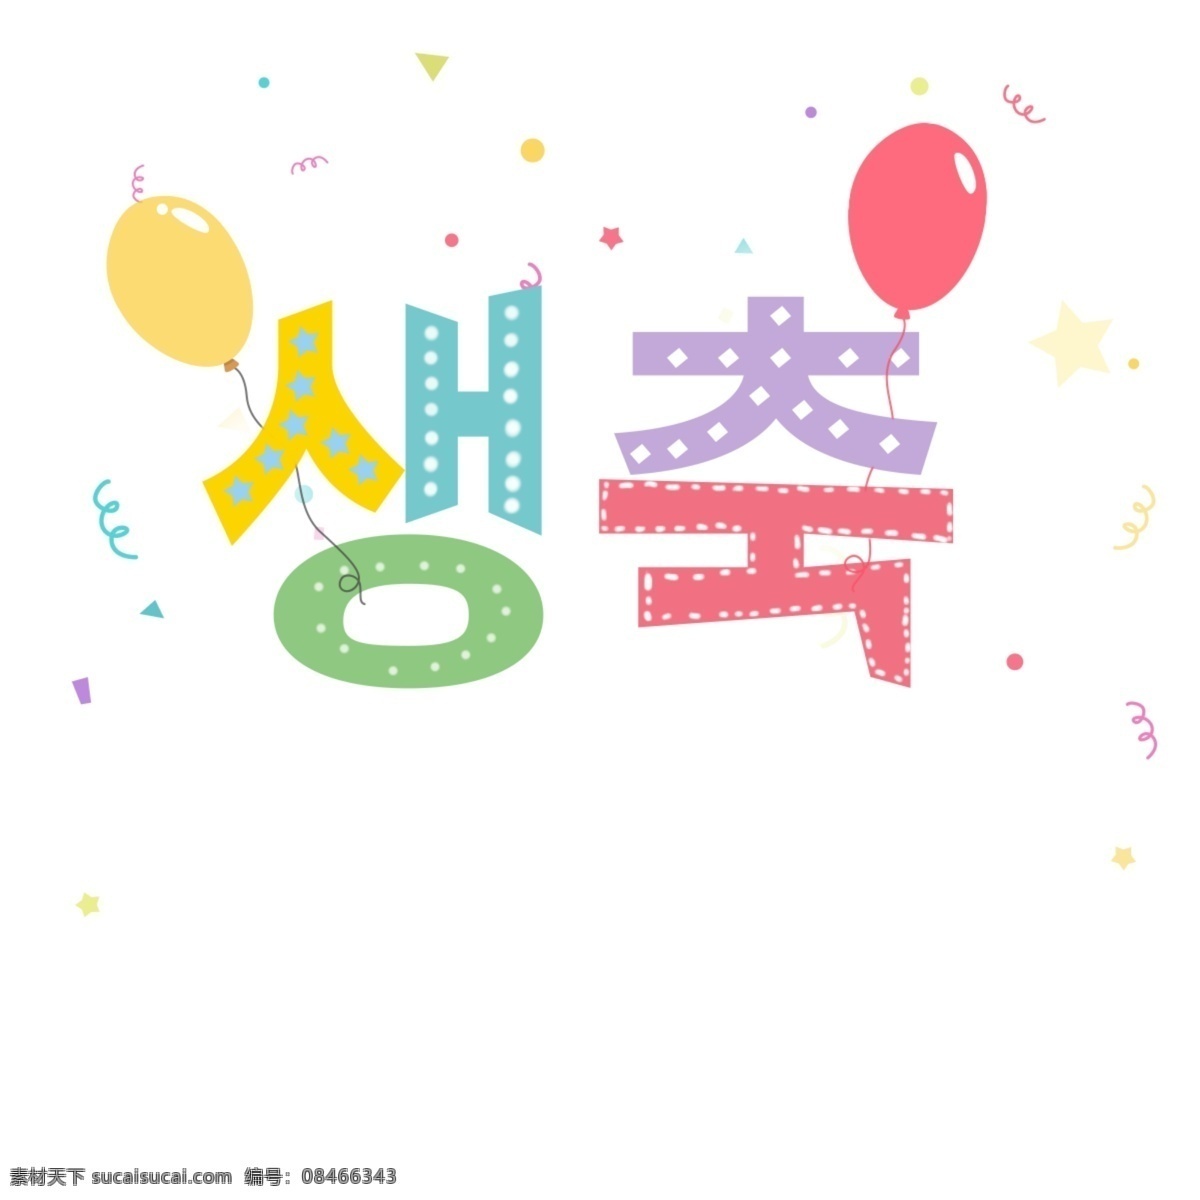 漂亮 颜色 字体 布局 祝你生日快乐 可爱 彩色绘画 字体设计 气球 一根轴